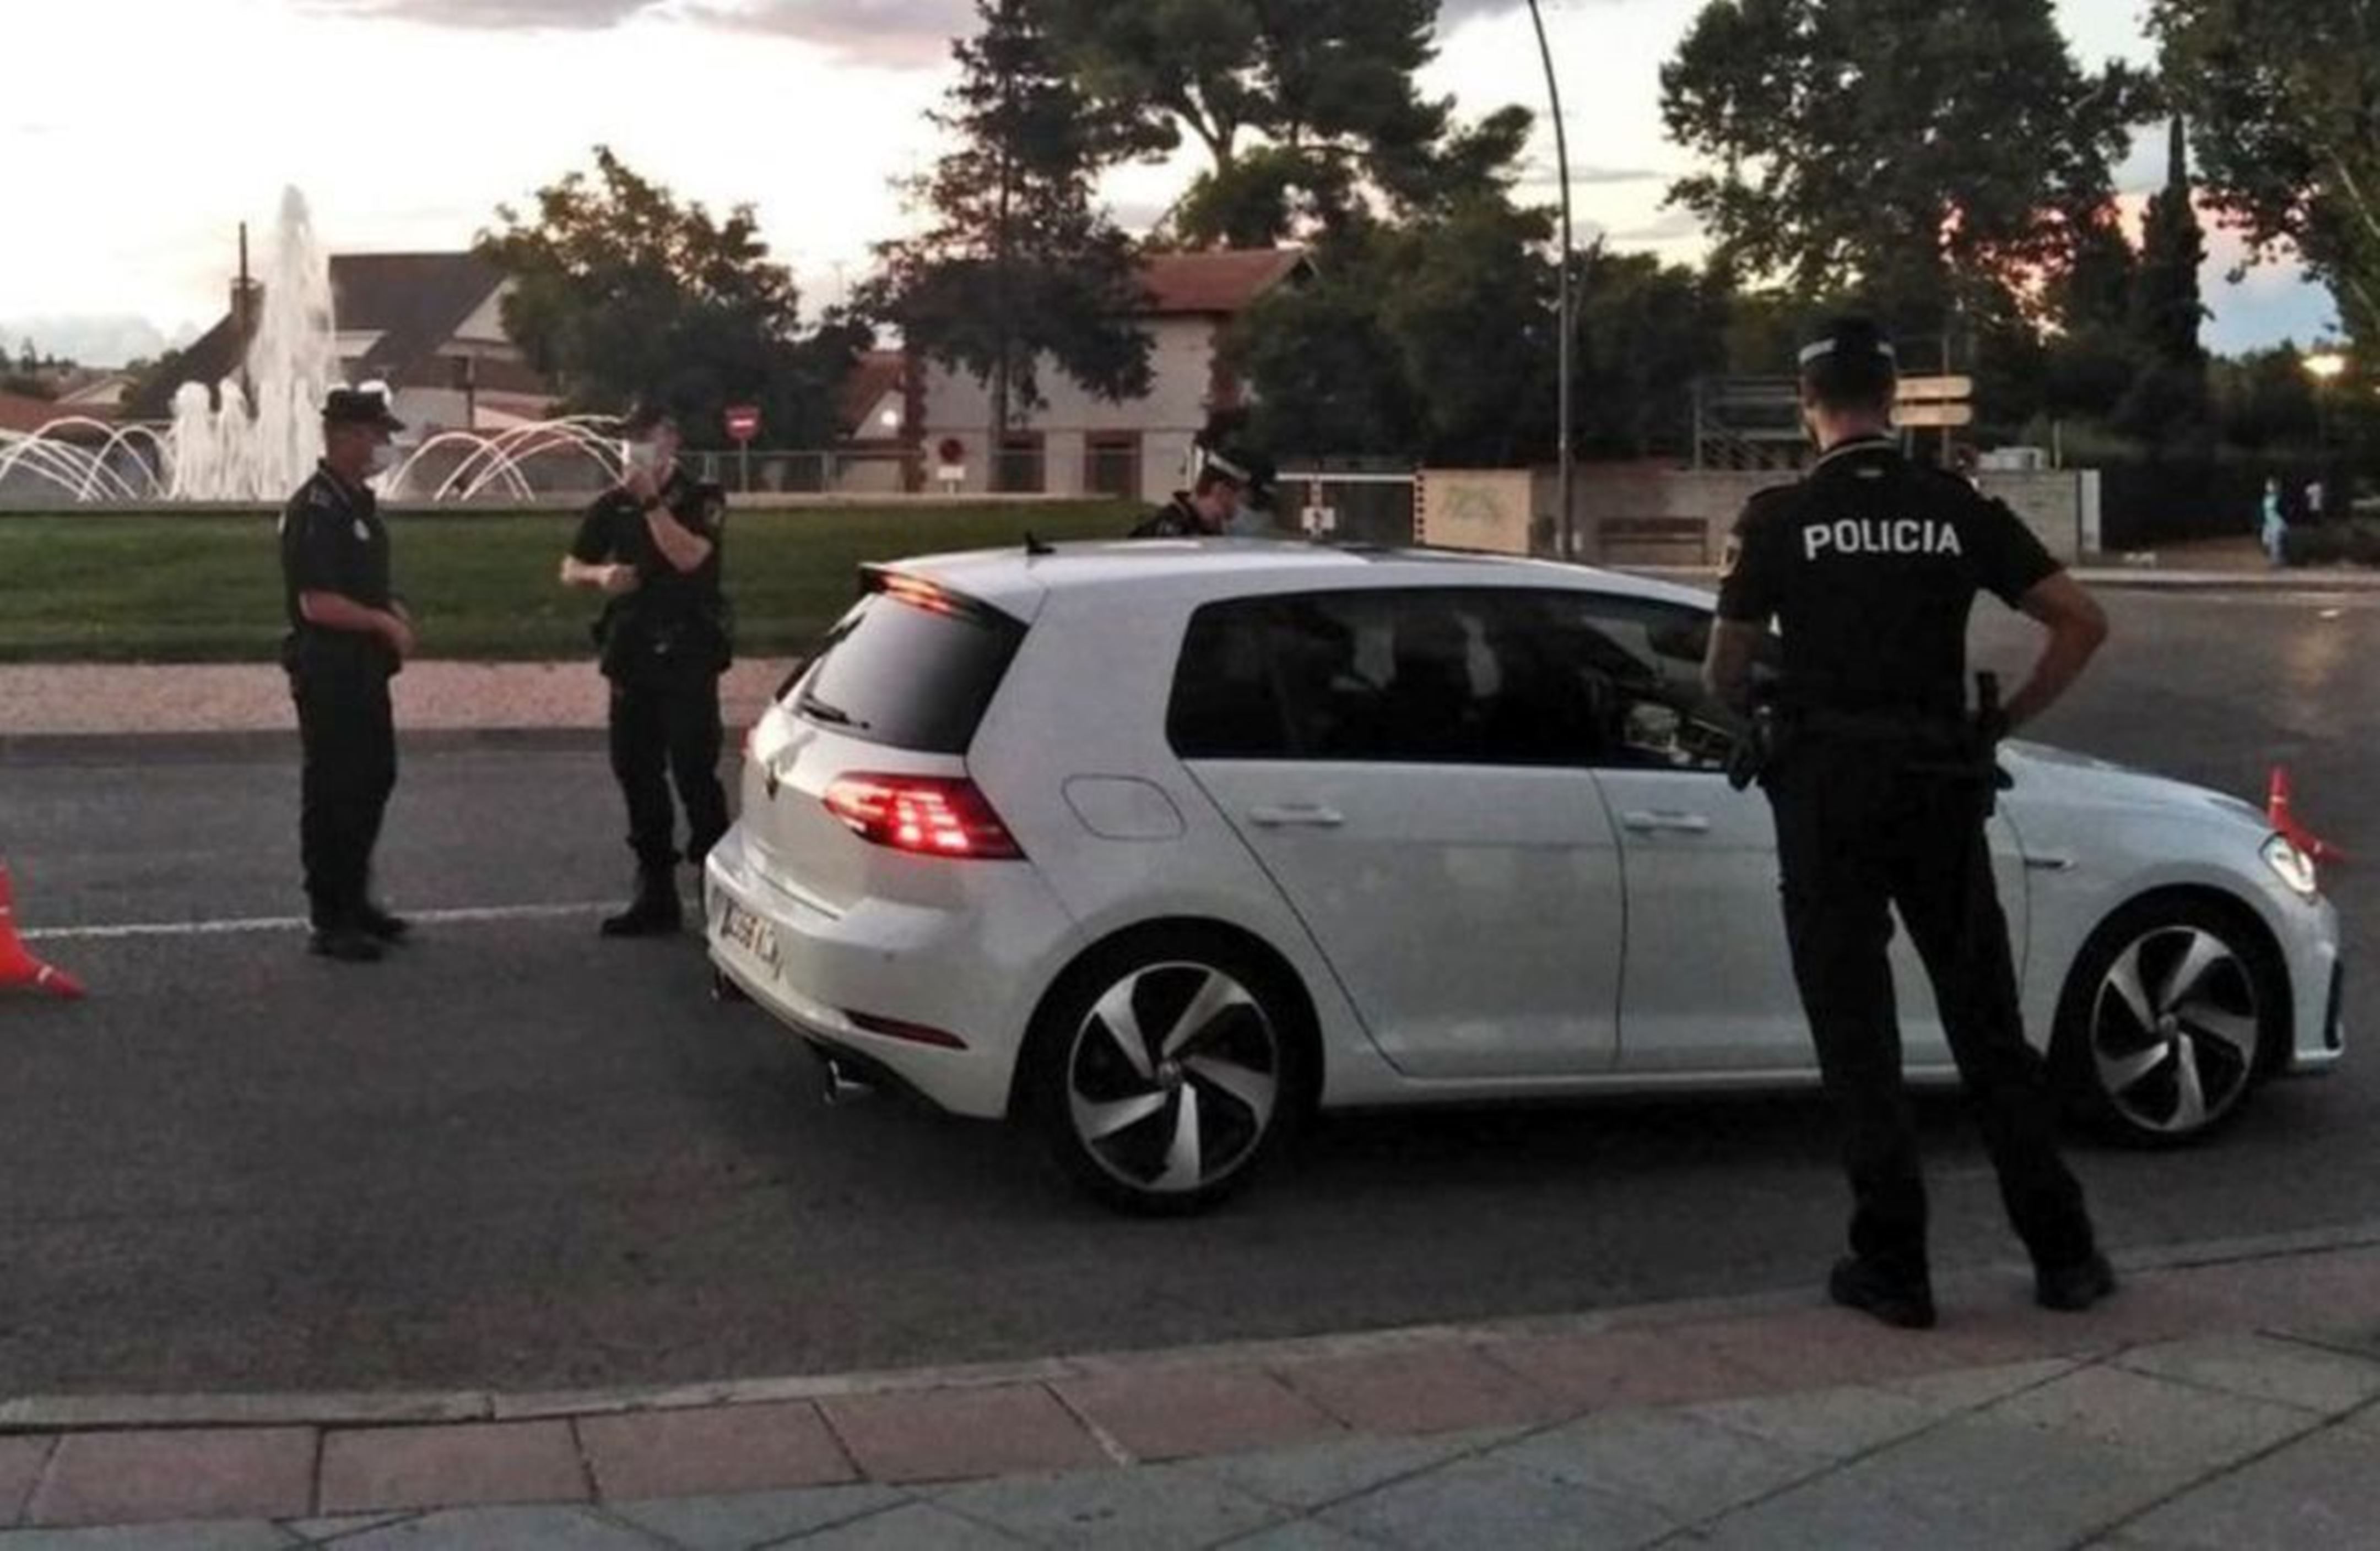  ¿Hasta dónde vamos a llegar?: Un policía de Madrid dispara al aire acorralado por jóvenes a los que